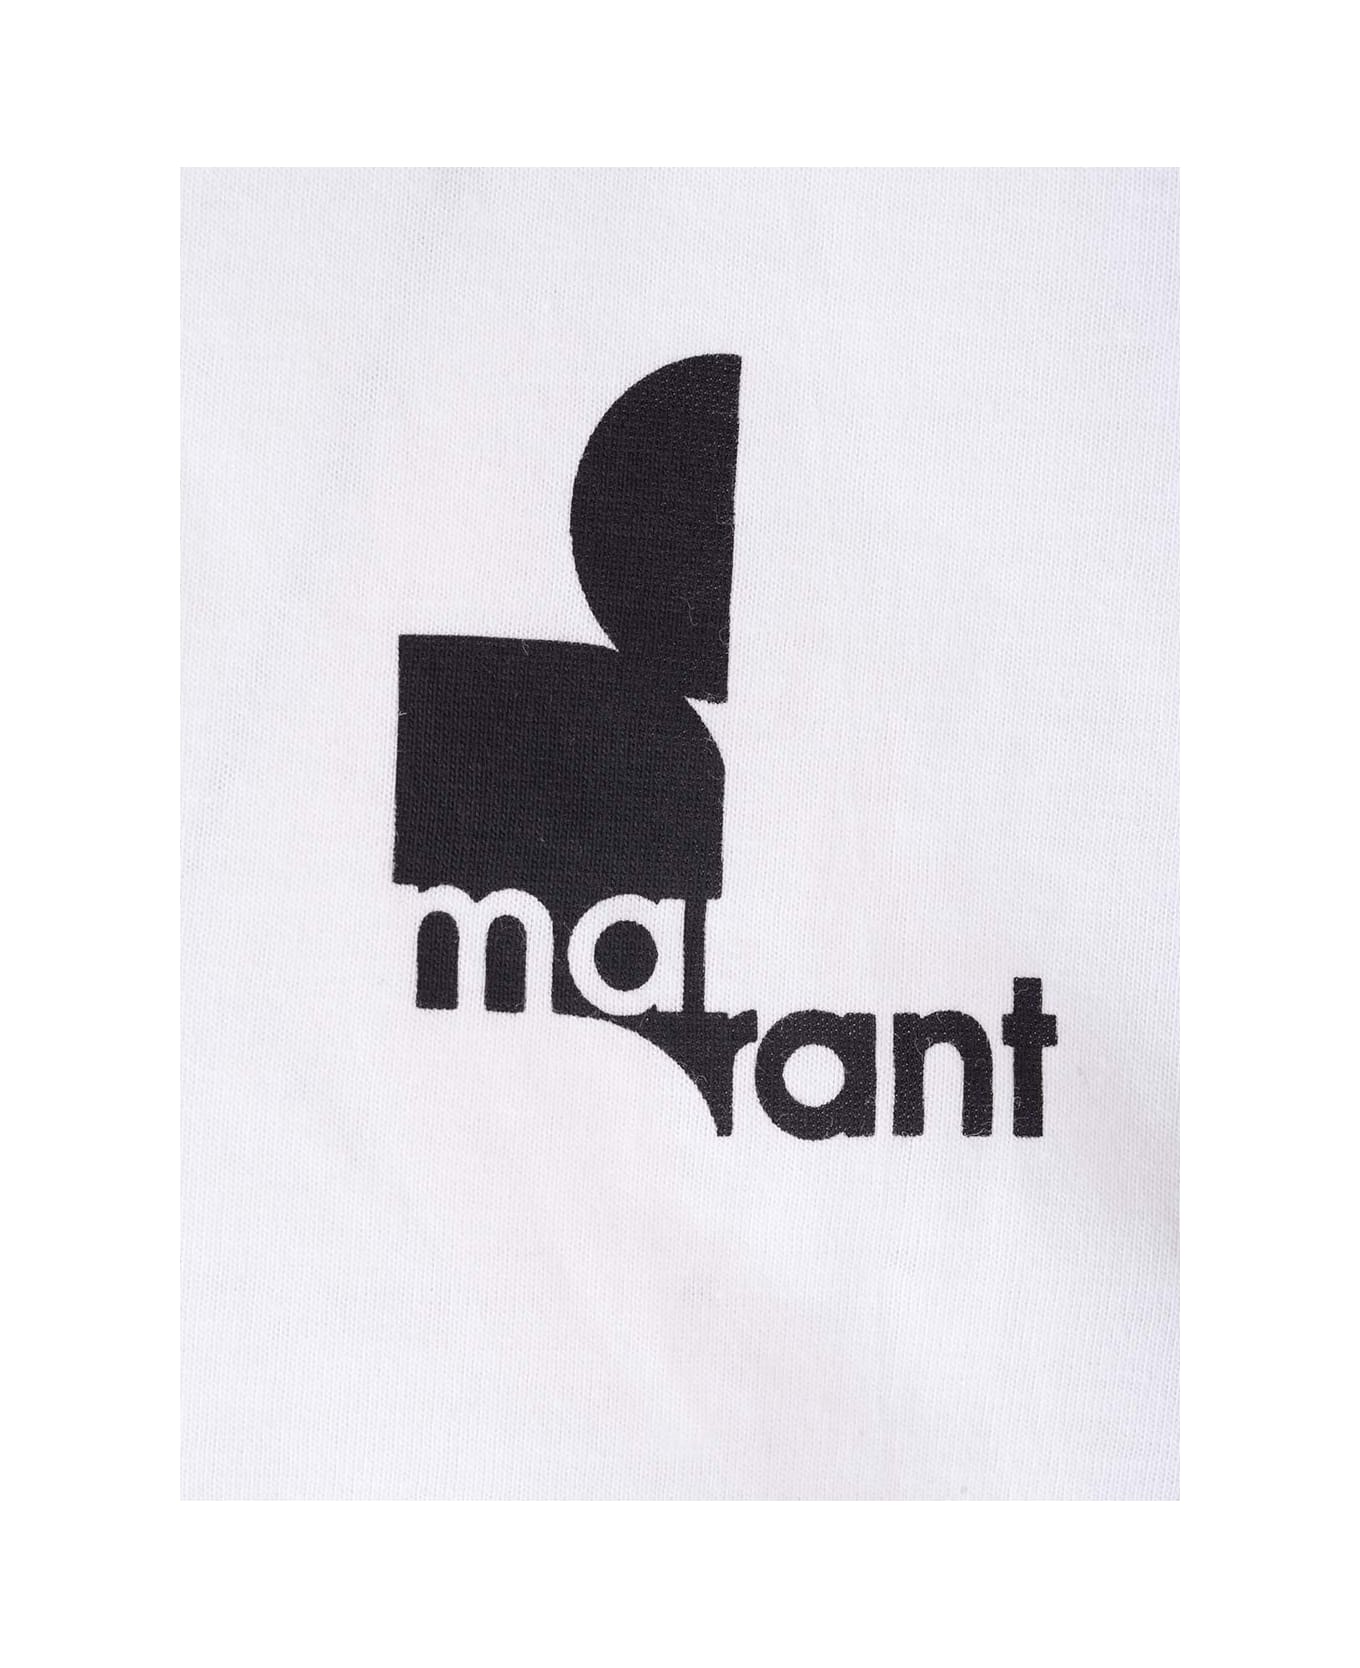 Isabel Marant 'zafferh' T-shirt - White